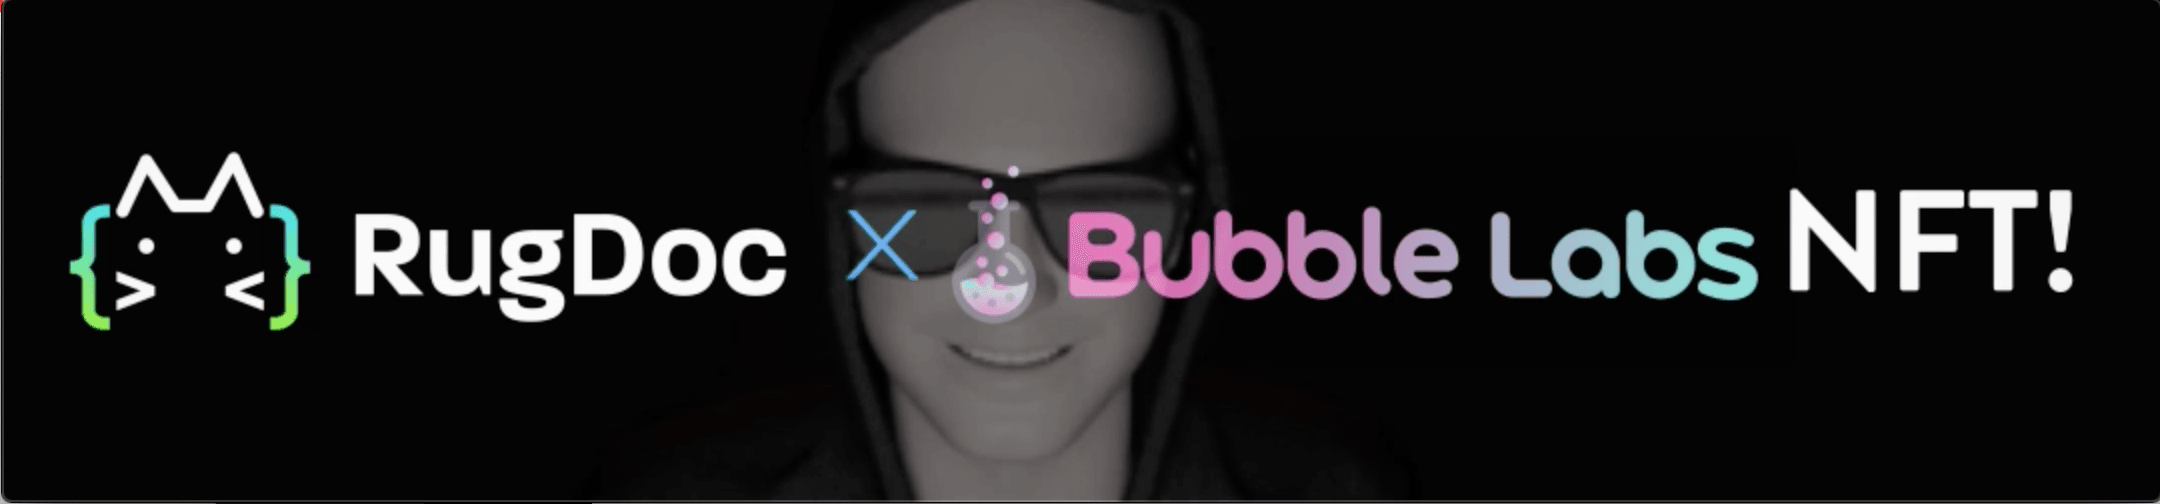 RugDoc-BubbleLabs 横幅